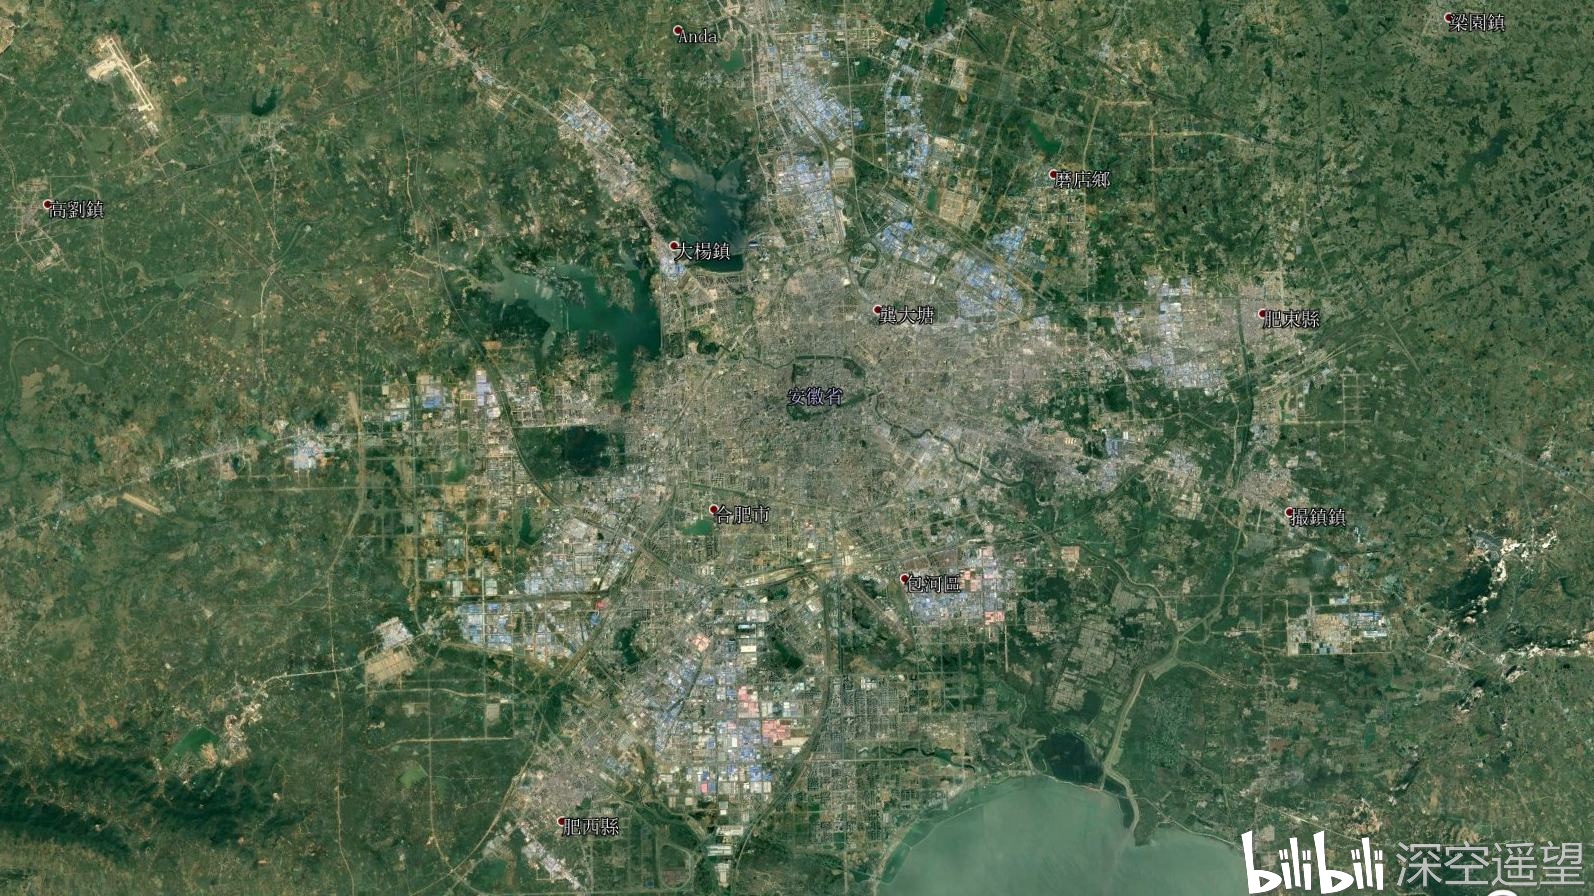 卫星地图上的安徽合肥,城市建成区很大,安徽第一城实至名归